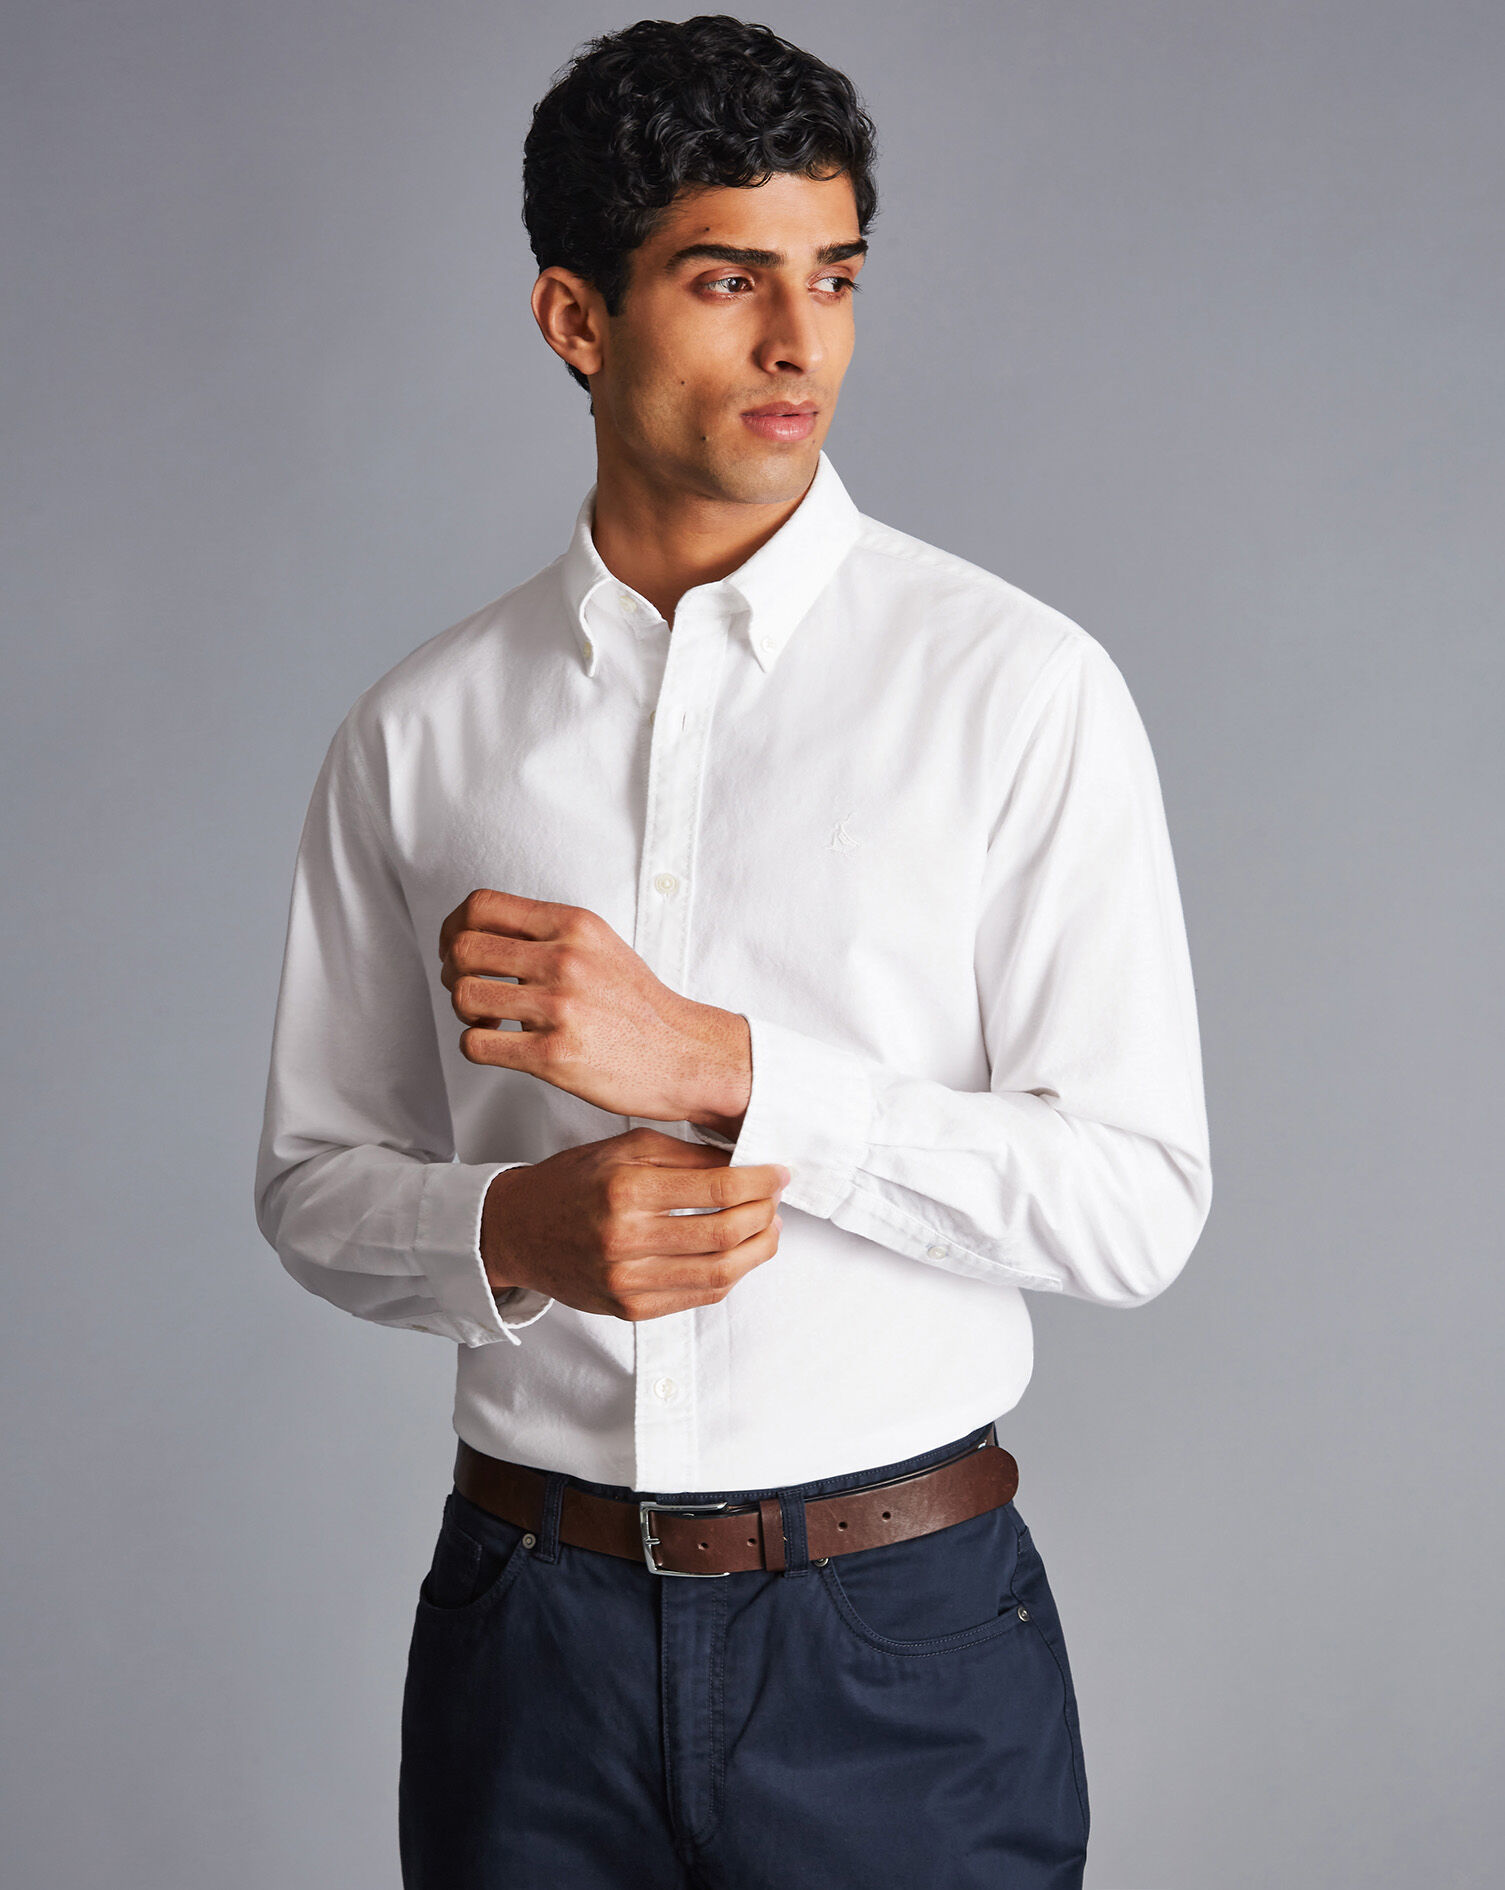 ・送料無料 Button Down Front Pockets Shirt White - istg.edu.ec